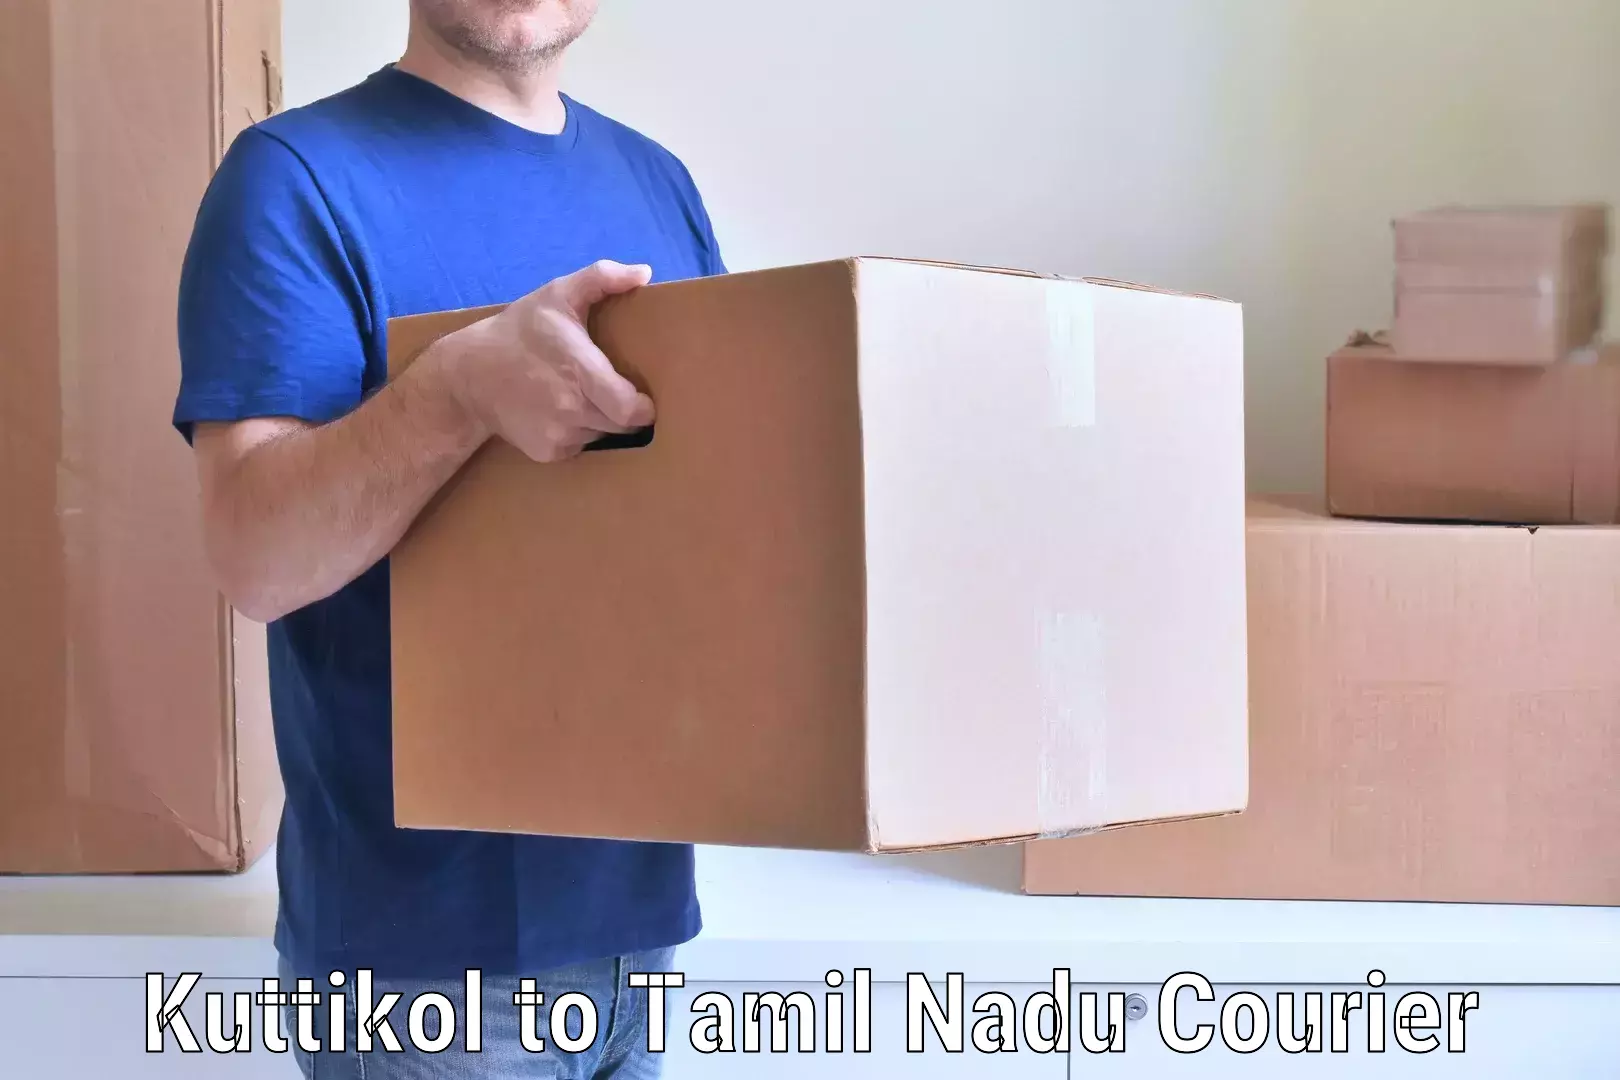 Skilled furniture transporters Kuttikol to Tamil Nadu